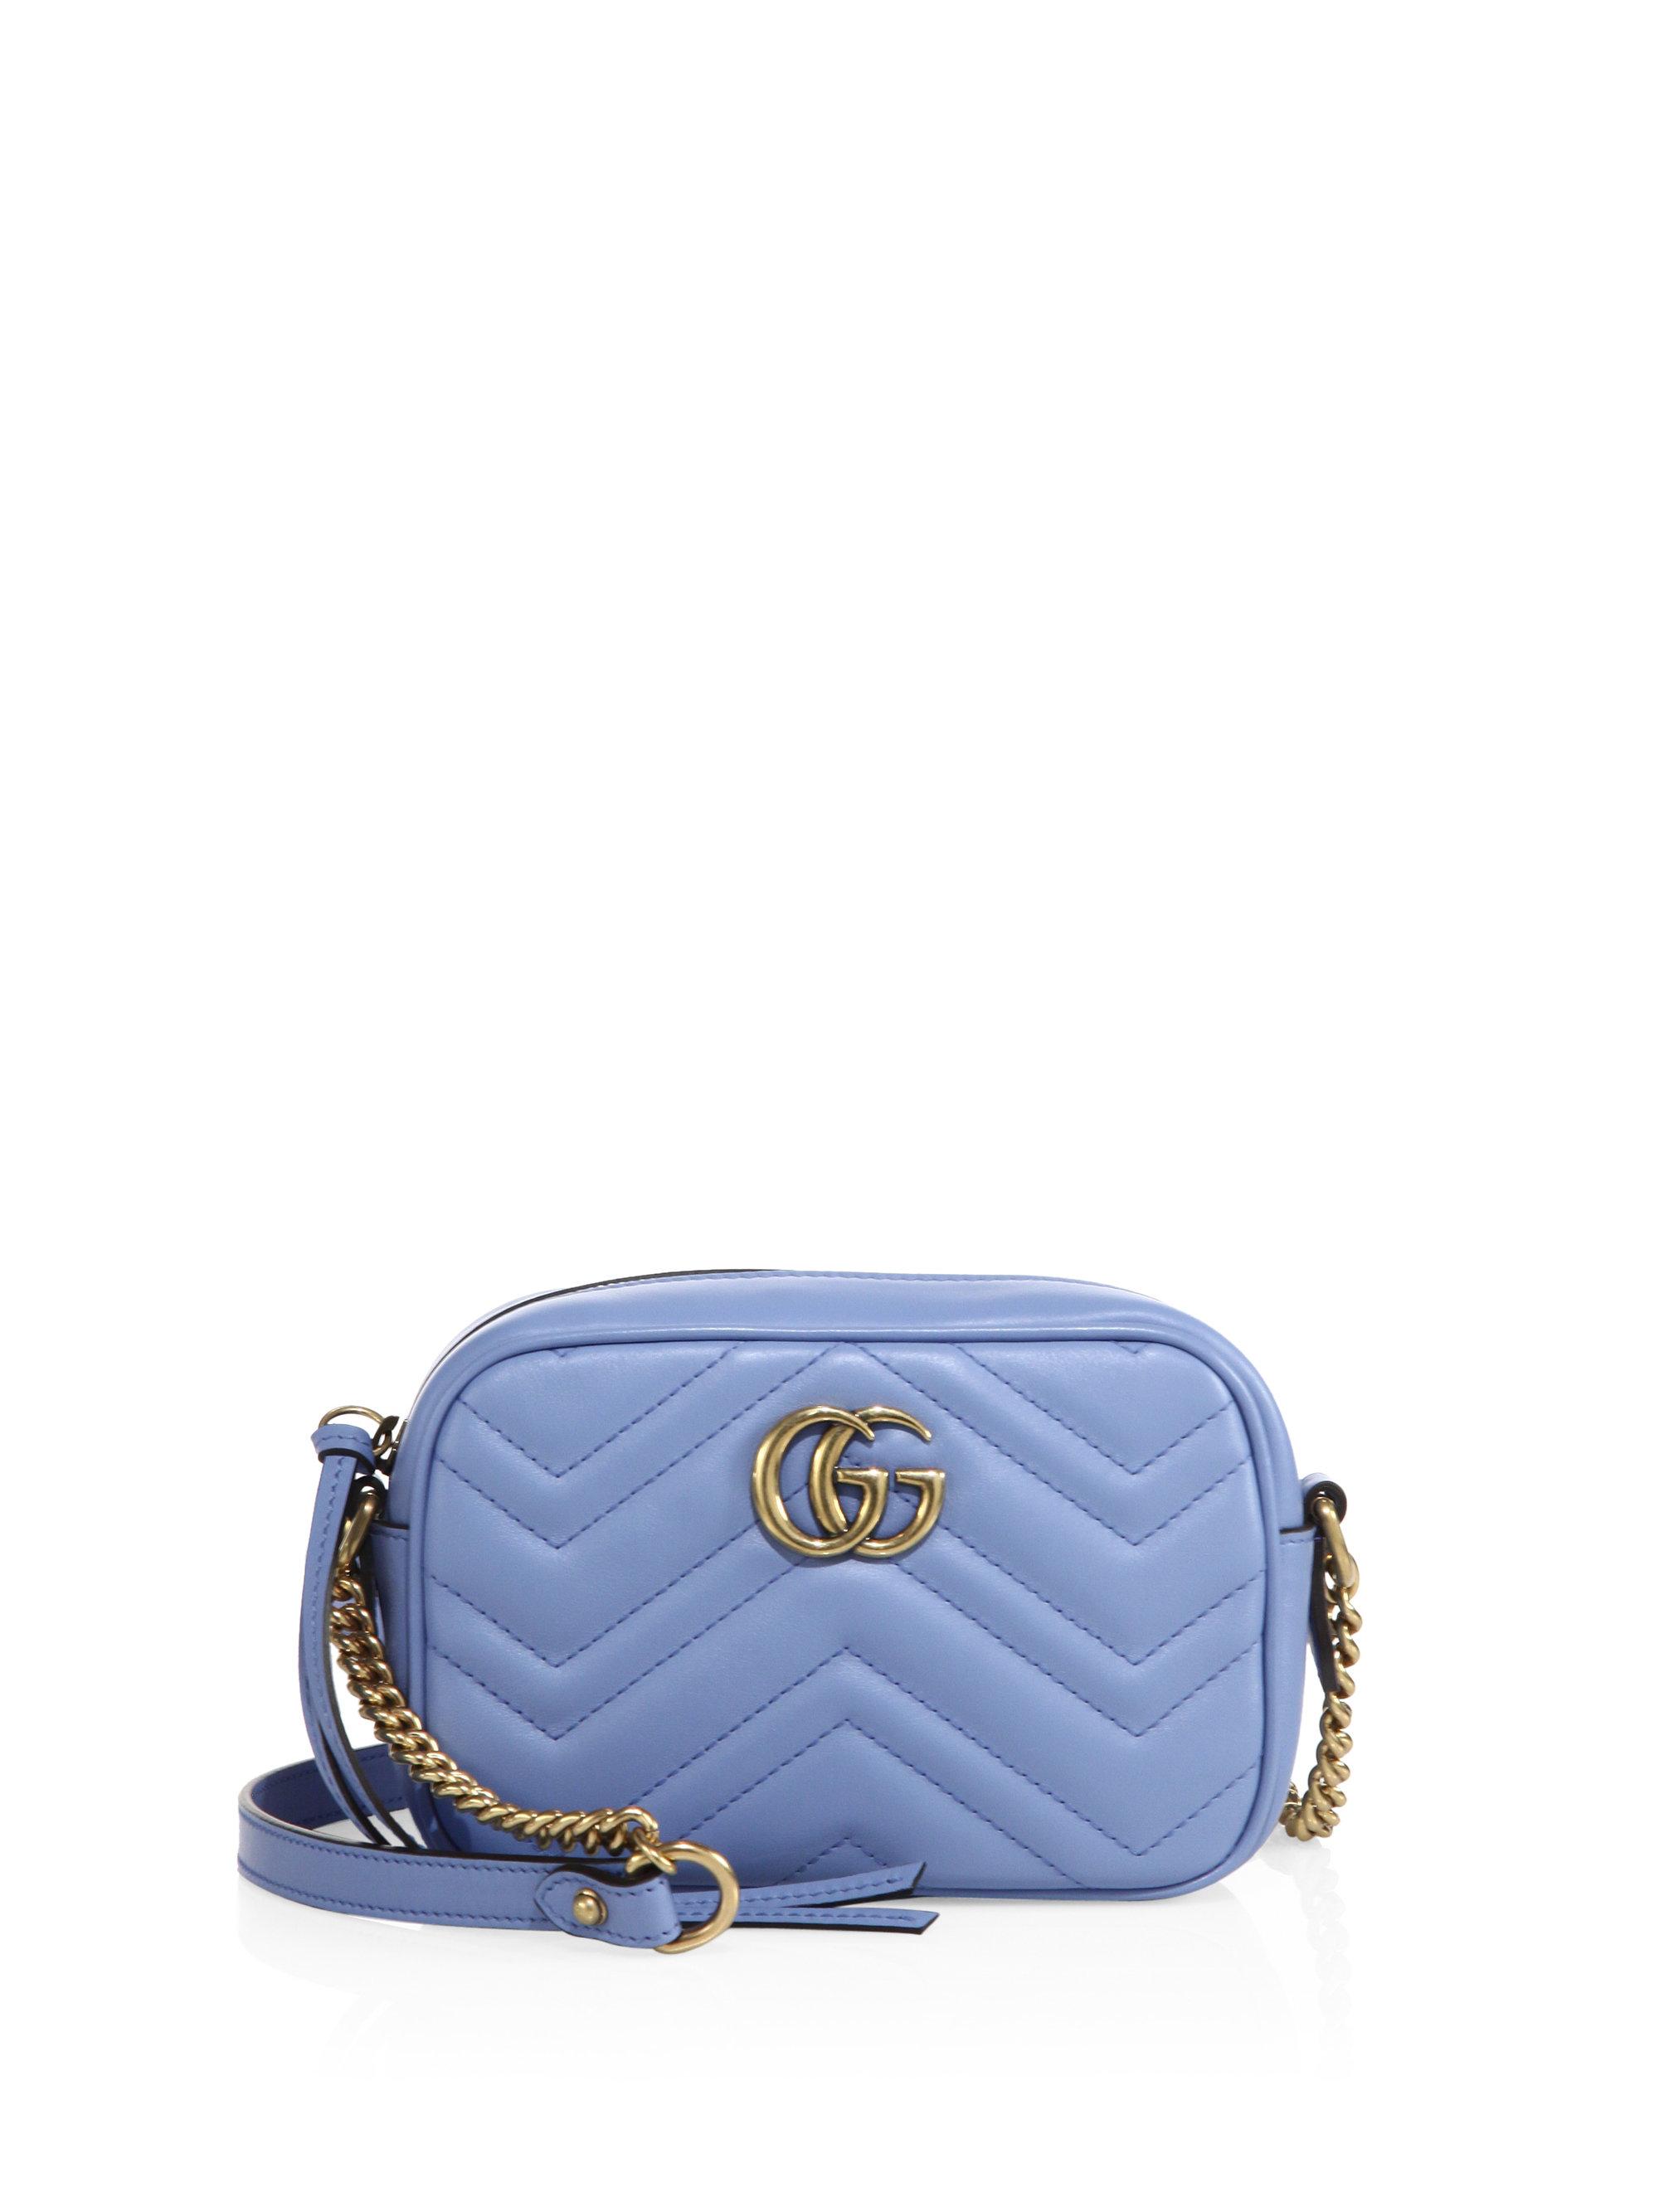 Gucci Mini Chevron Leather Camera Bag in Blue | Lyst